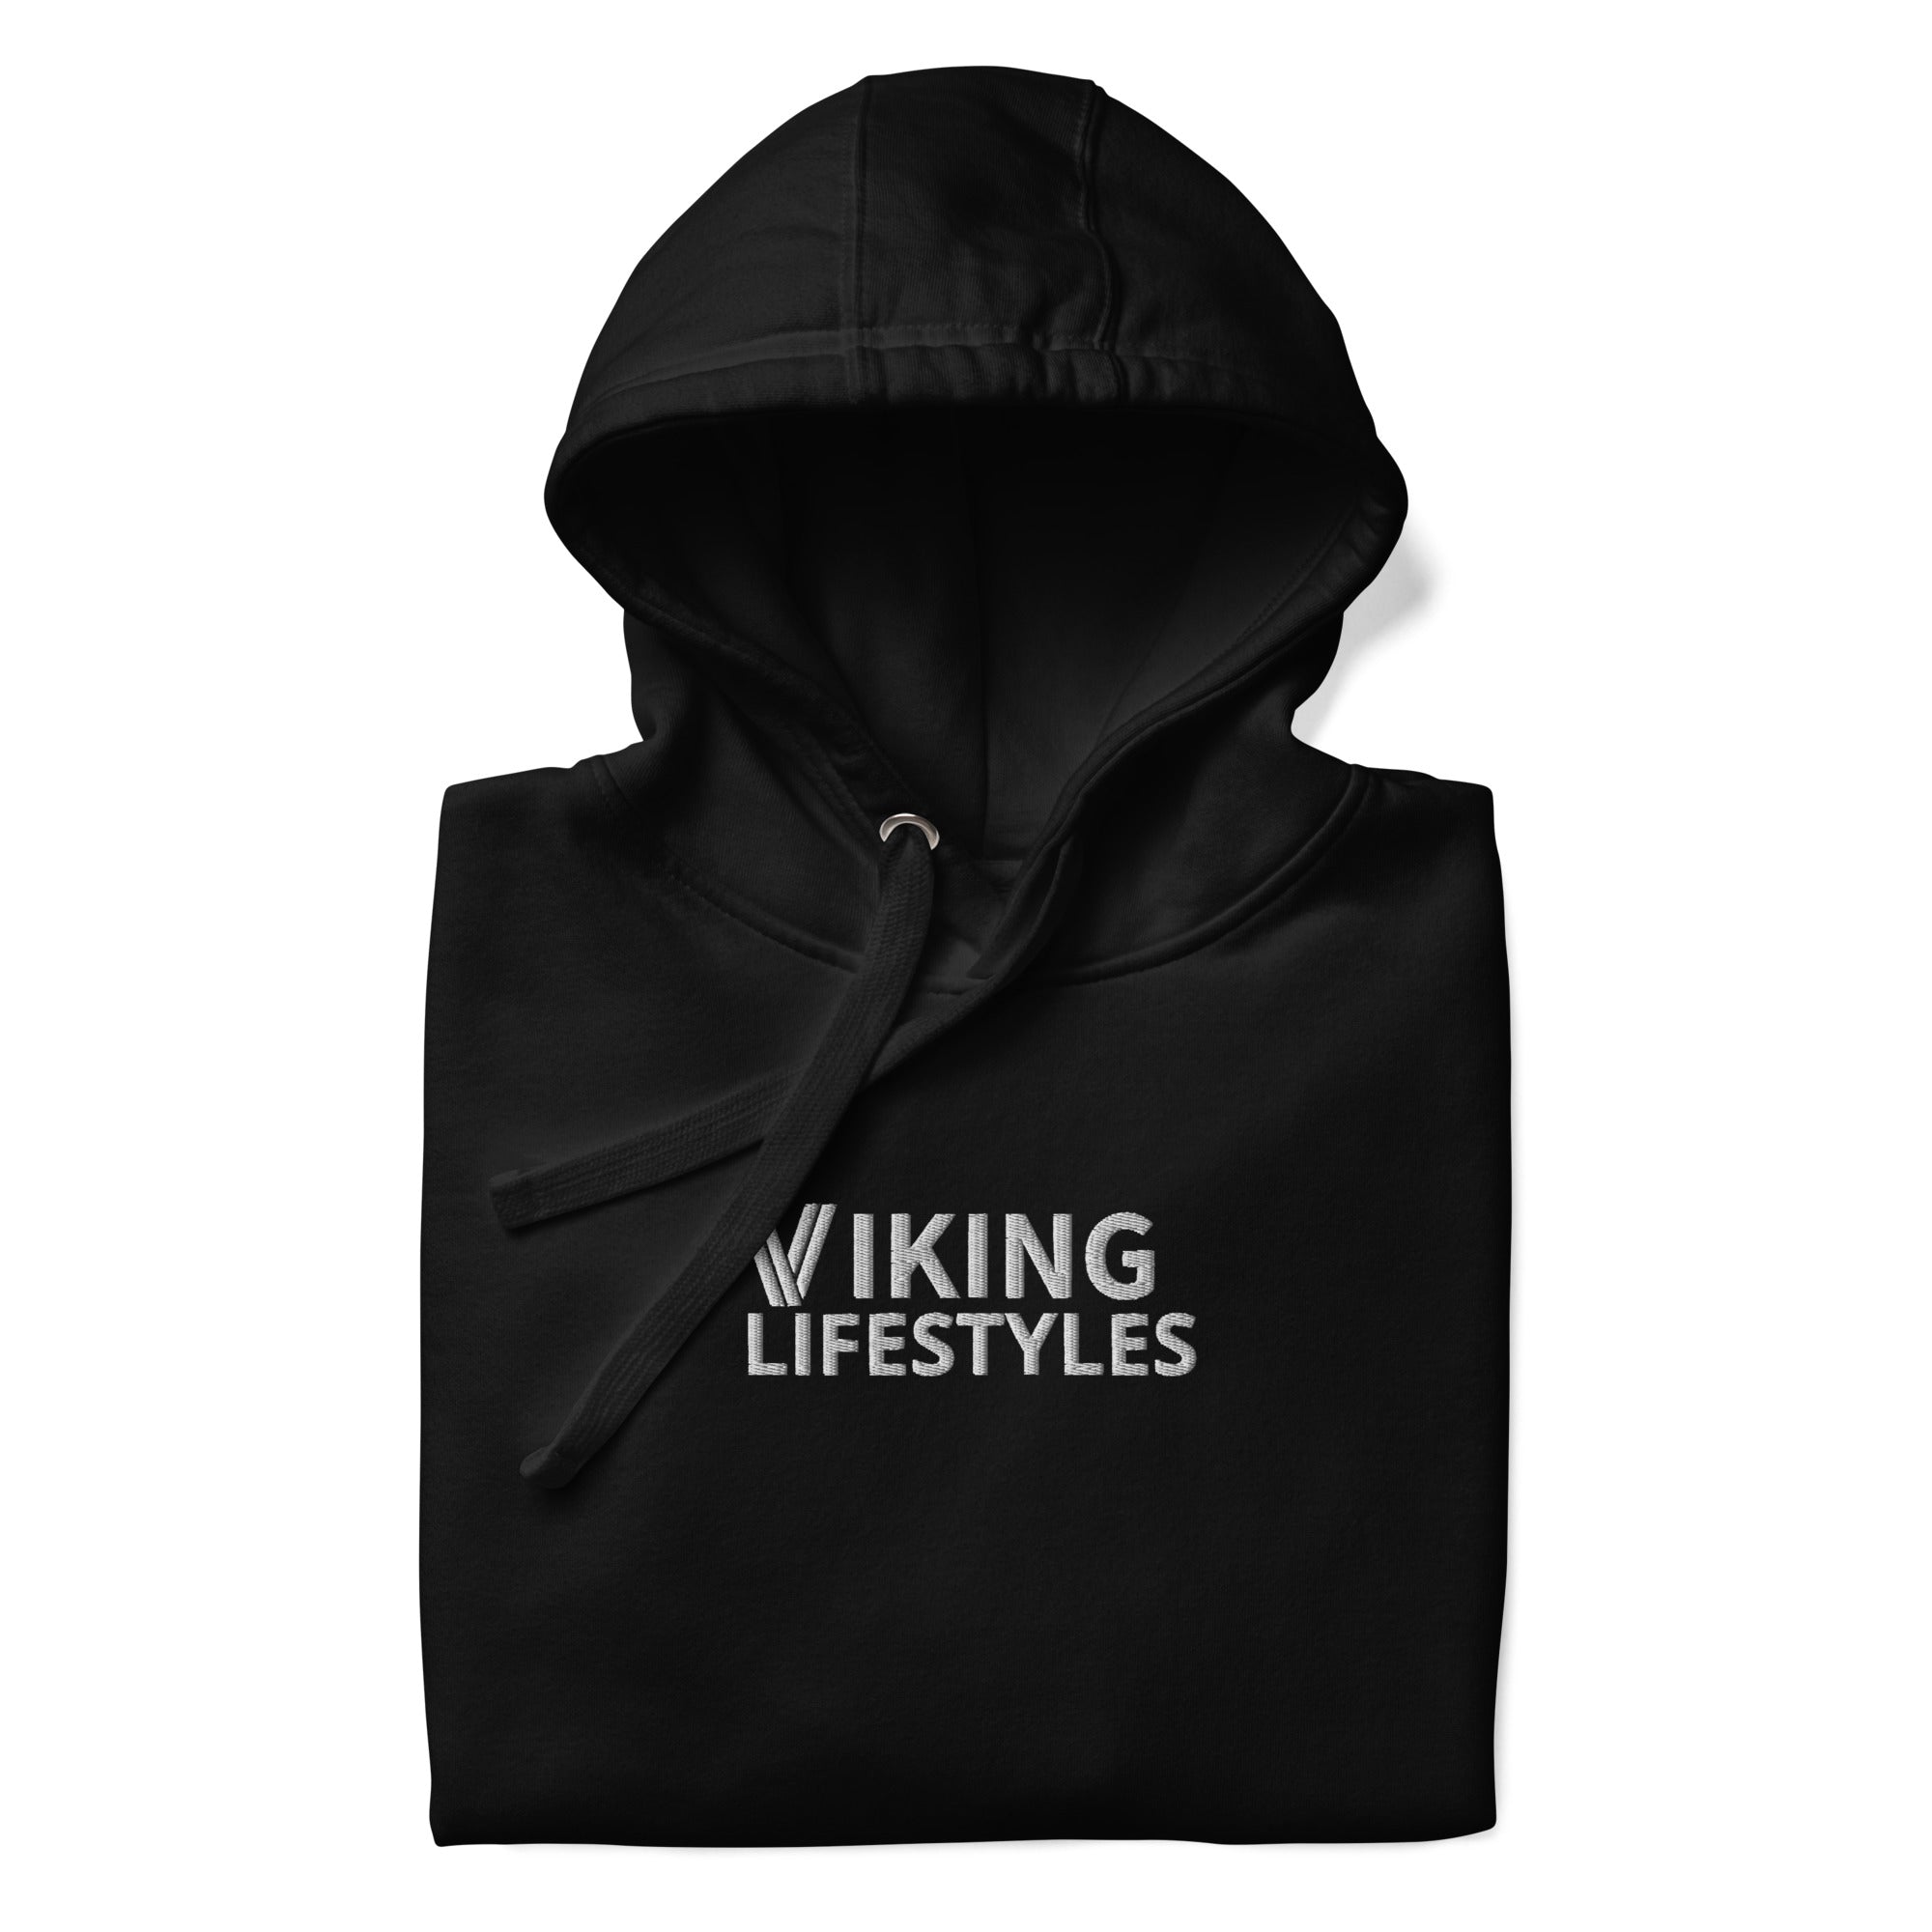 Viking lifestyles hoodie